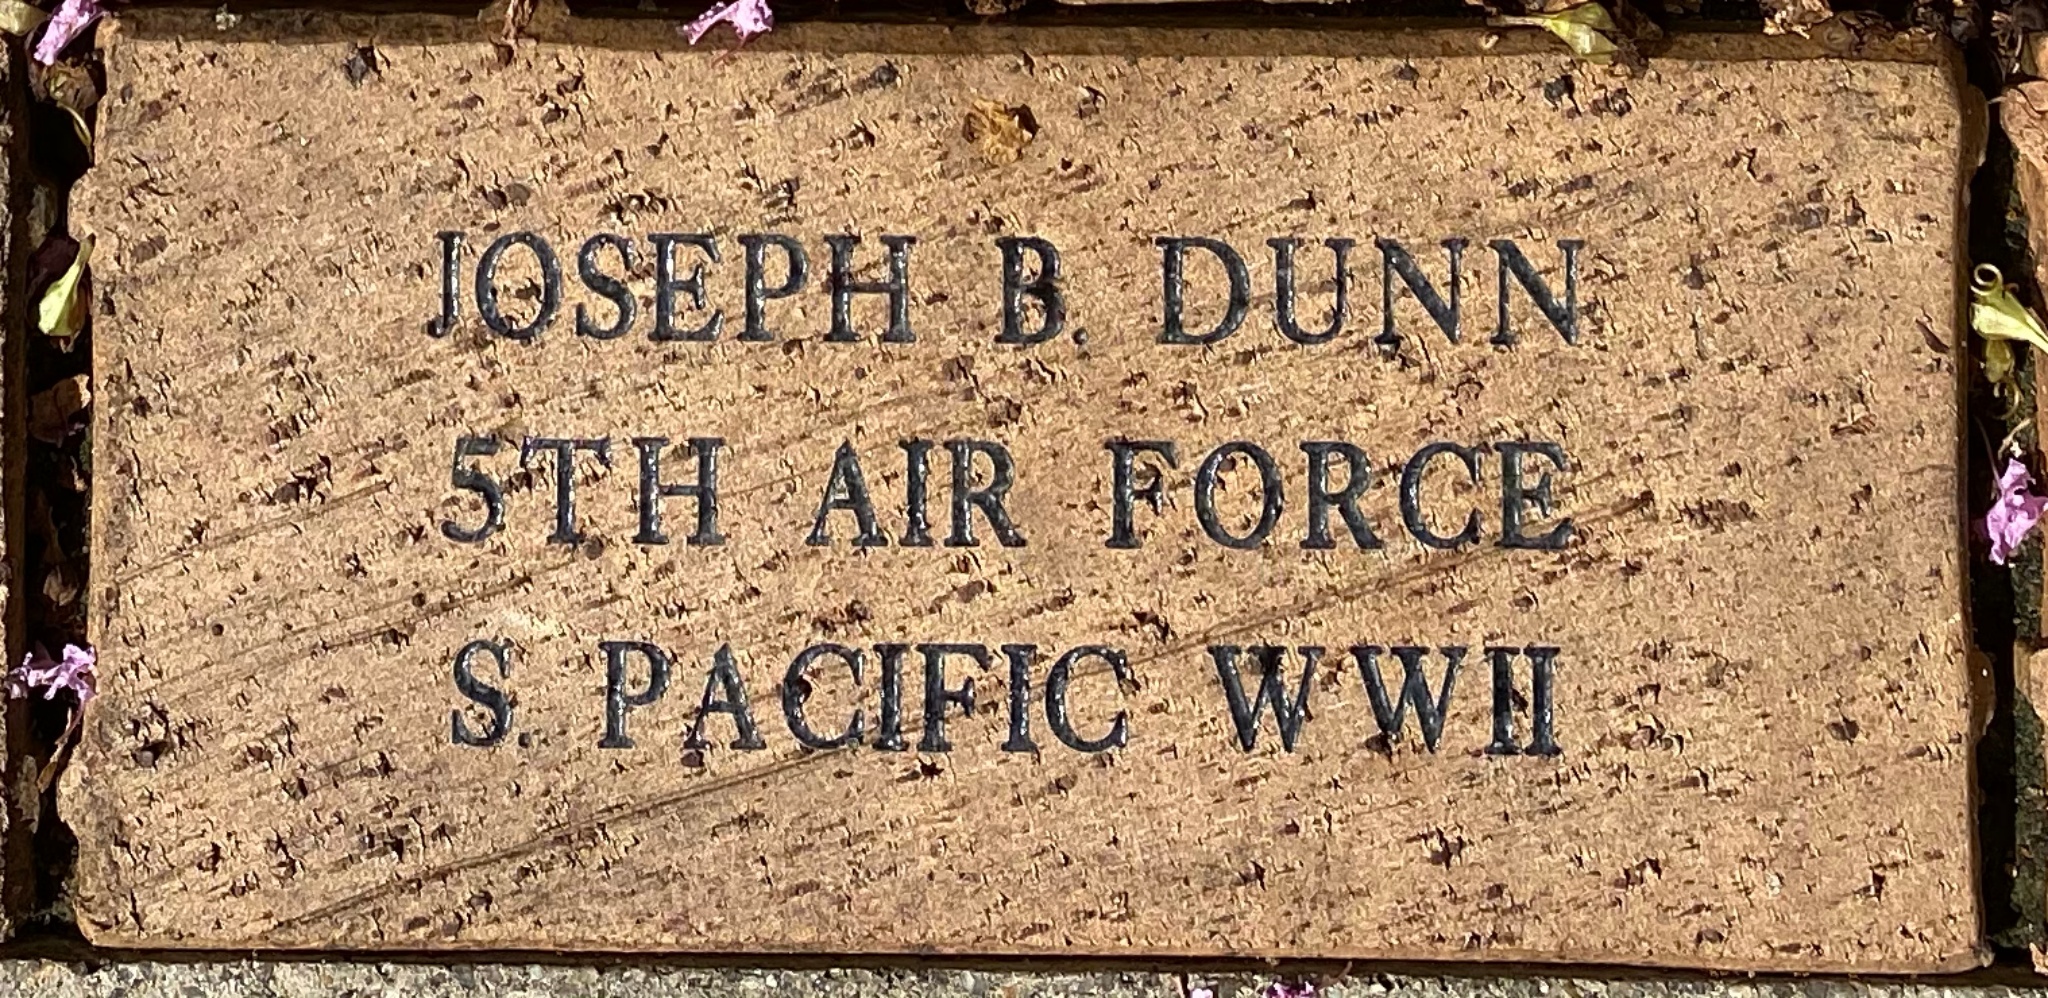 JOSEPH B DUNN 5TH AIR FORCE S. PACIFIC WWII